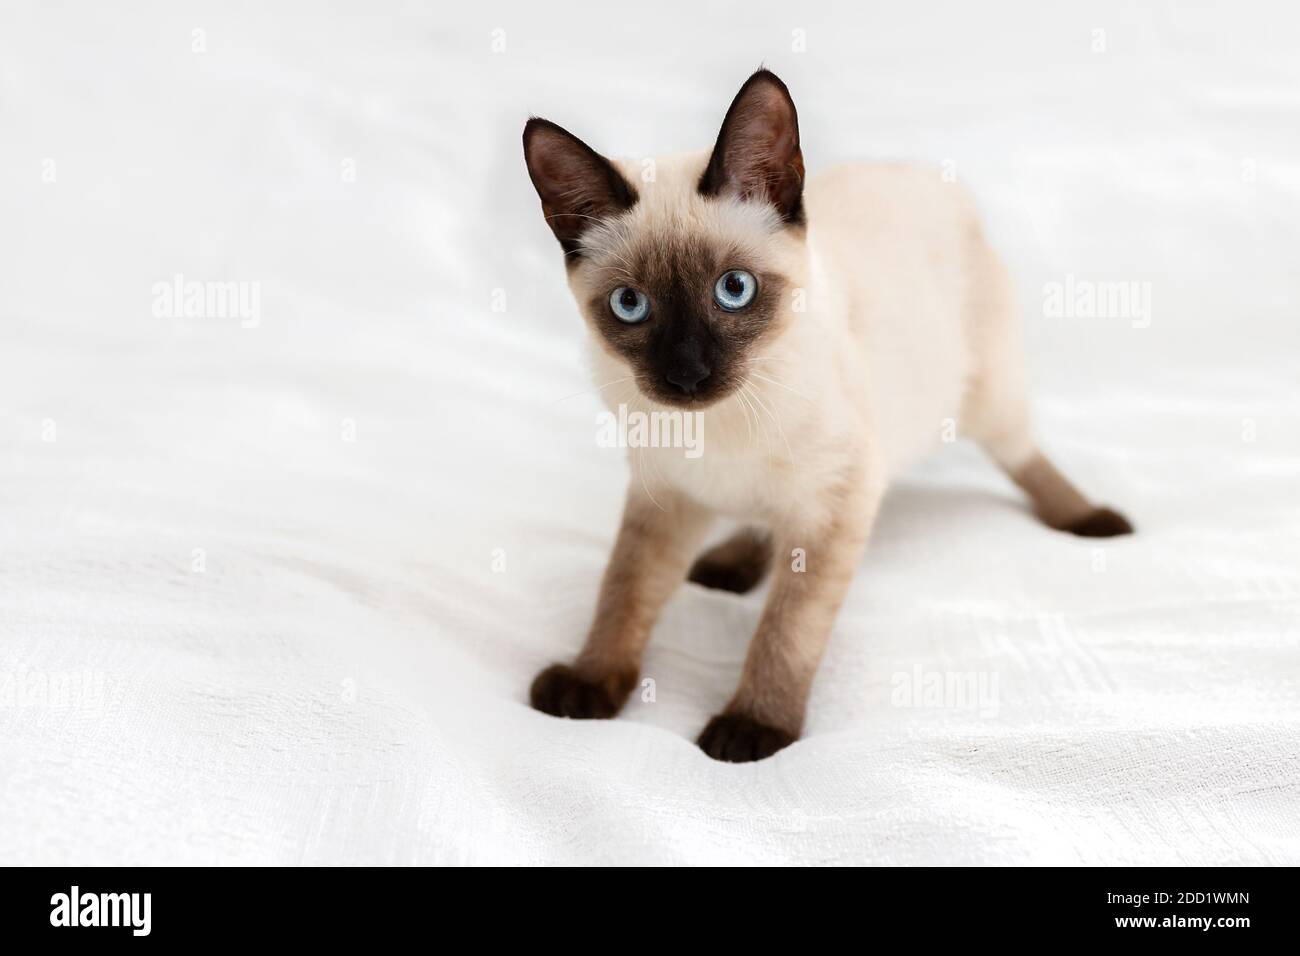 Ein verspieltes Kätzchen in einer seltsamen Pose wird auf einem hellen Hintergrund gespielt. Stockfoto